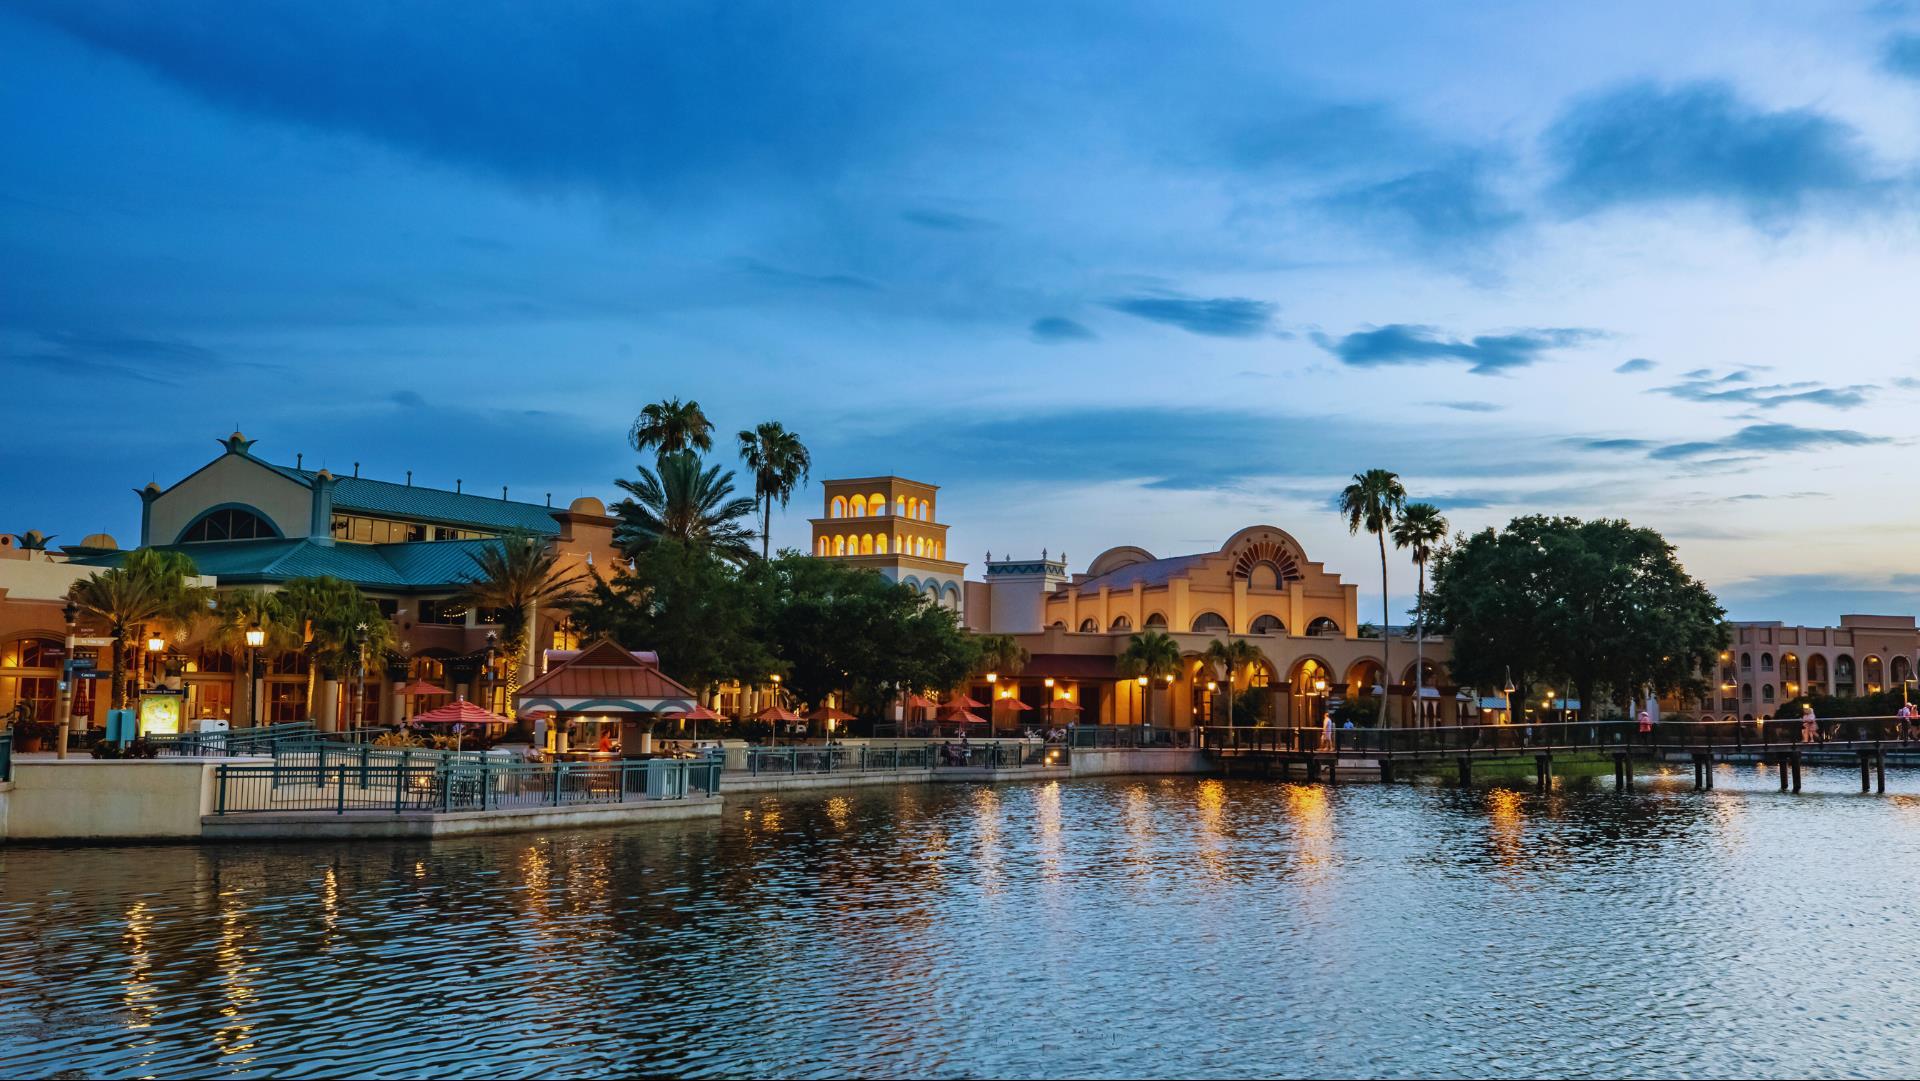 Disney's Coronado Springs Resort in Lake Buena Vista, FL